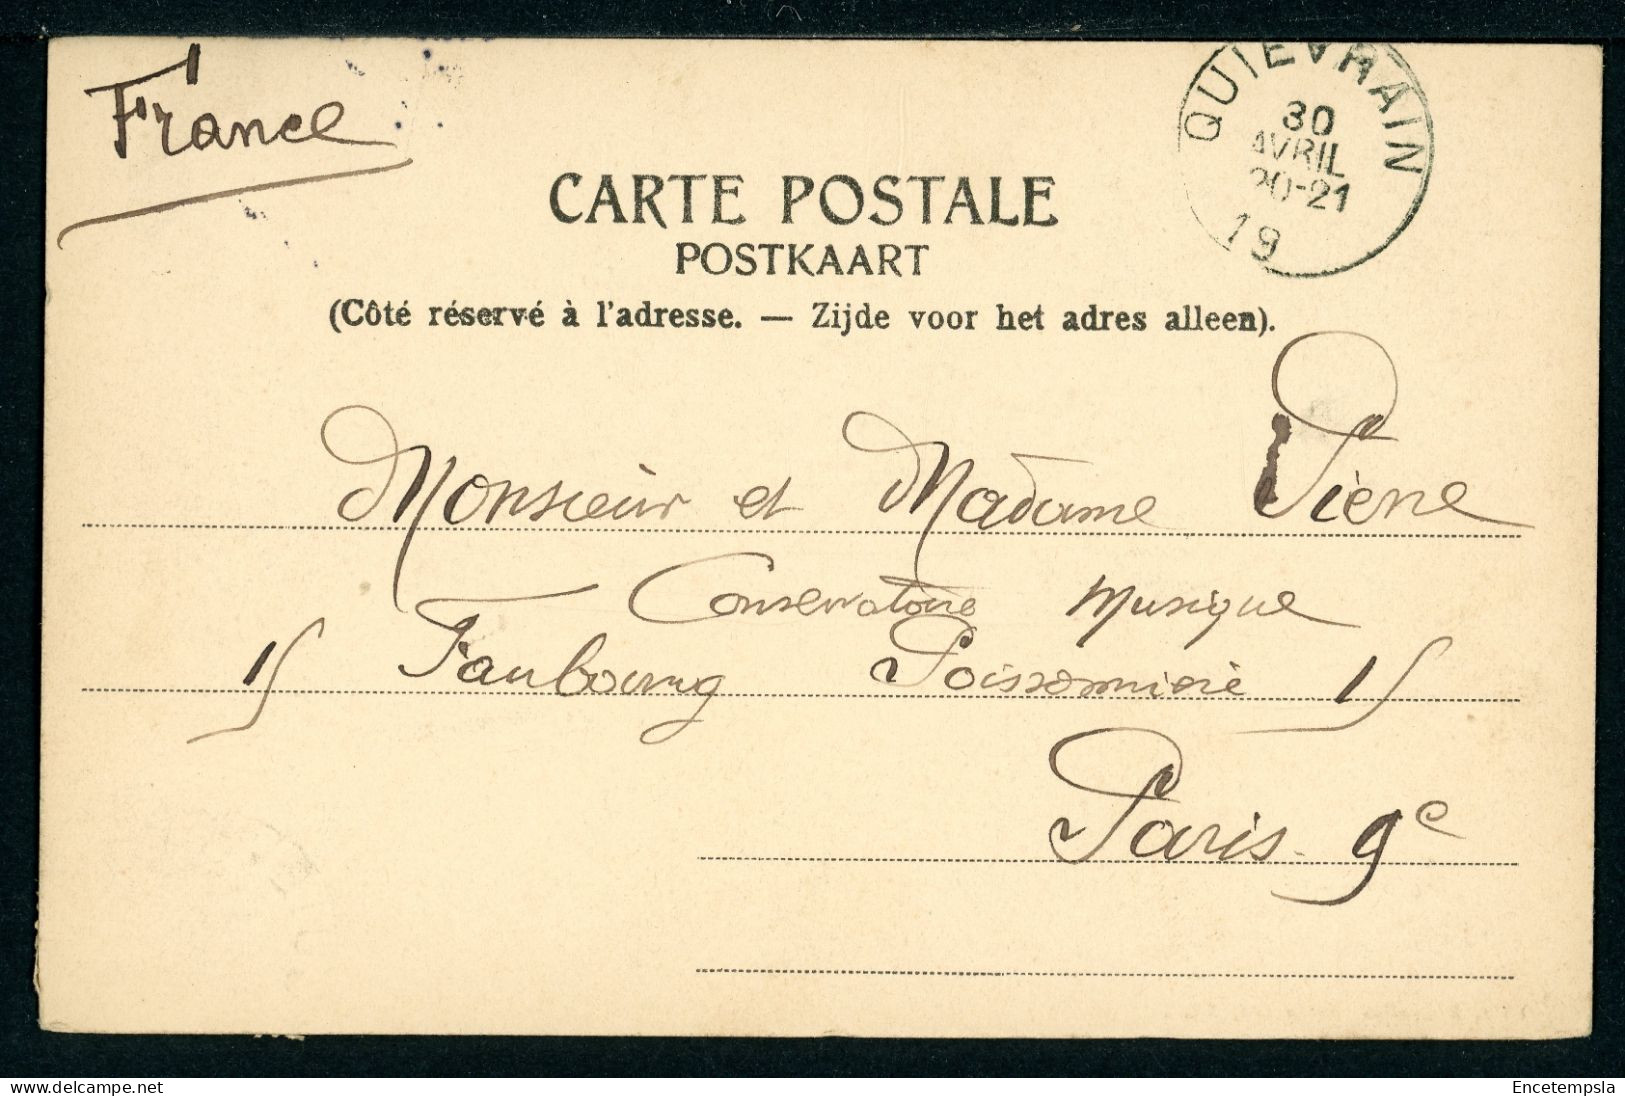 CPA - Carte Postale - Belgique - Quiévrain - Rue De Valenciennes (CP23816OK) - Quiévrain